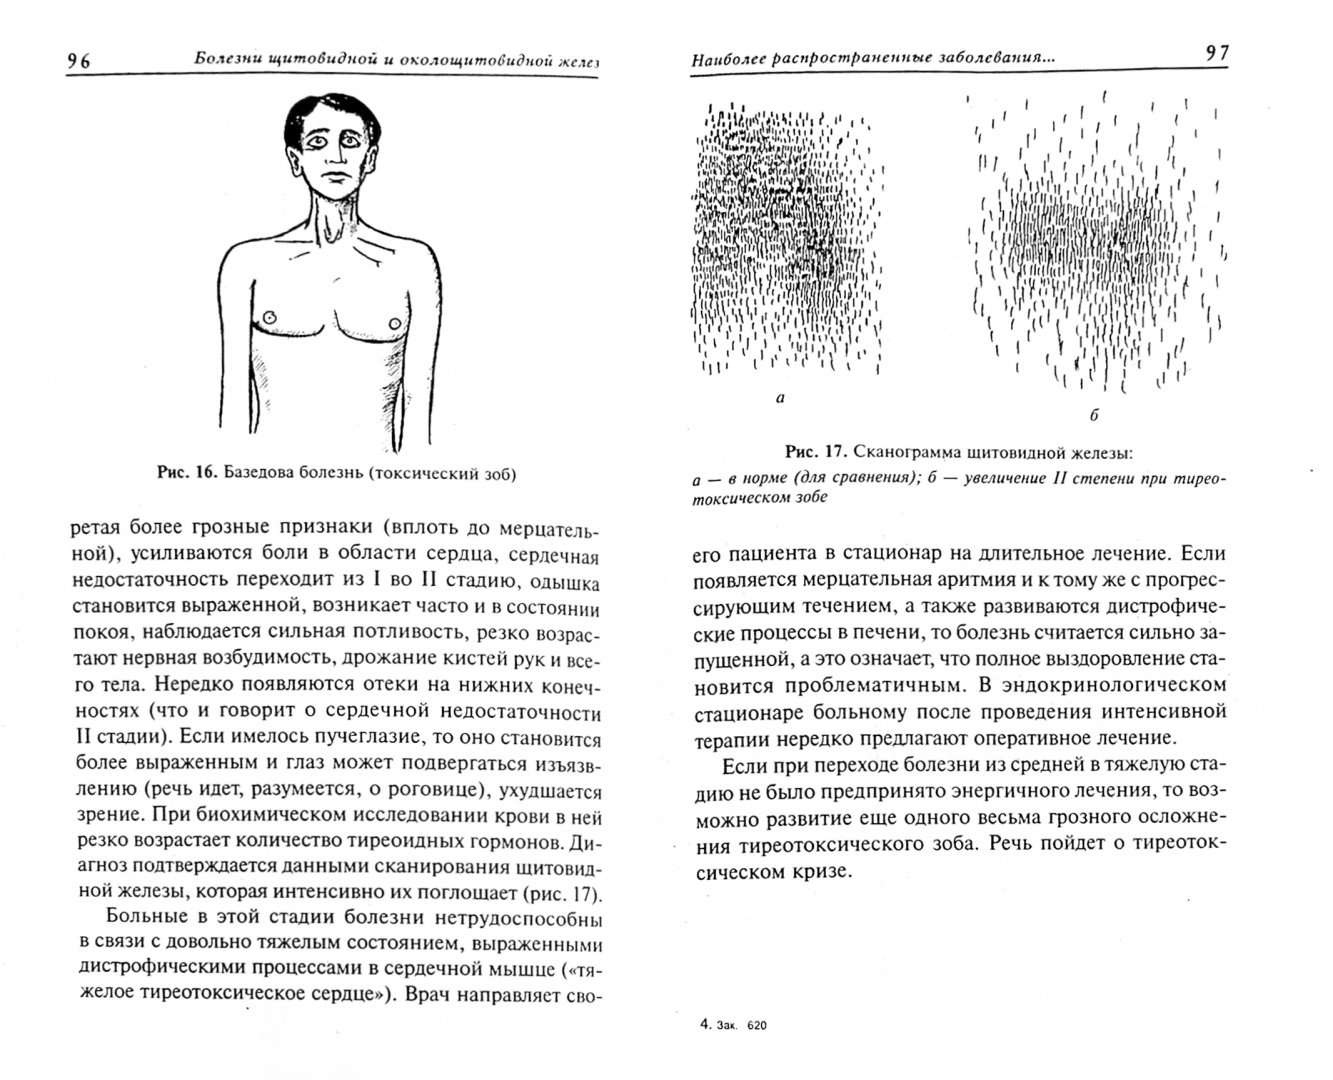 Иллюстрация 1 из 10 для Болезни щитовидной и околощитовидной желез: диагностика, профилактика, лечение - Виктор Казьмин | Лабиринт - книги. Источник: Лабиринт